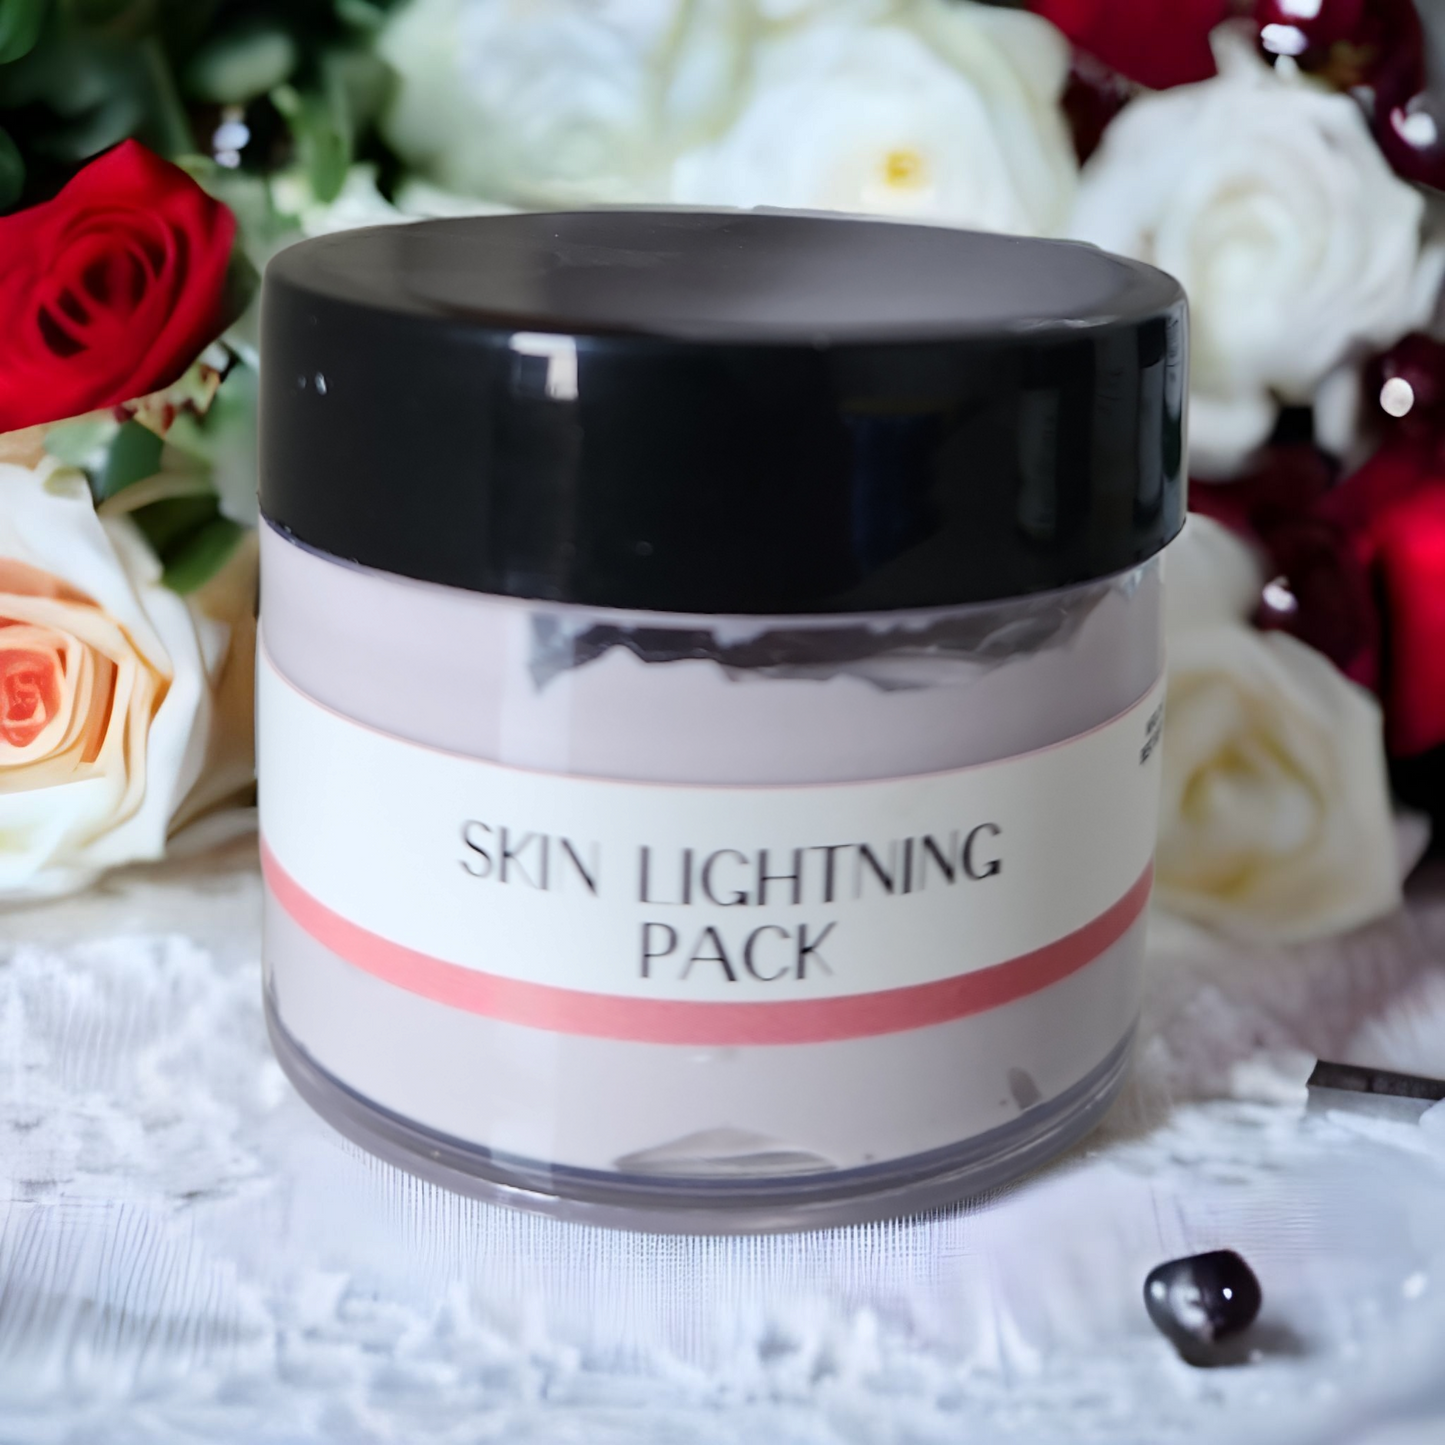 Skin lightening pack| detaing| 50gms